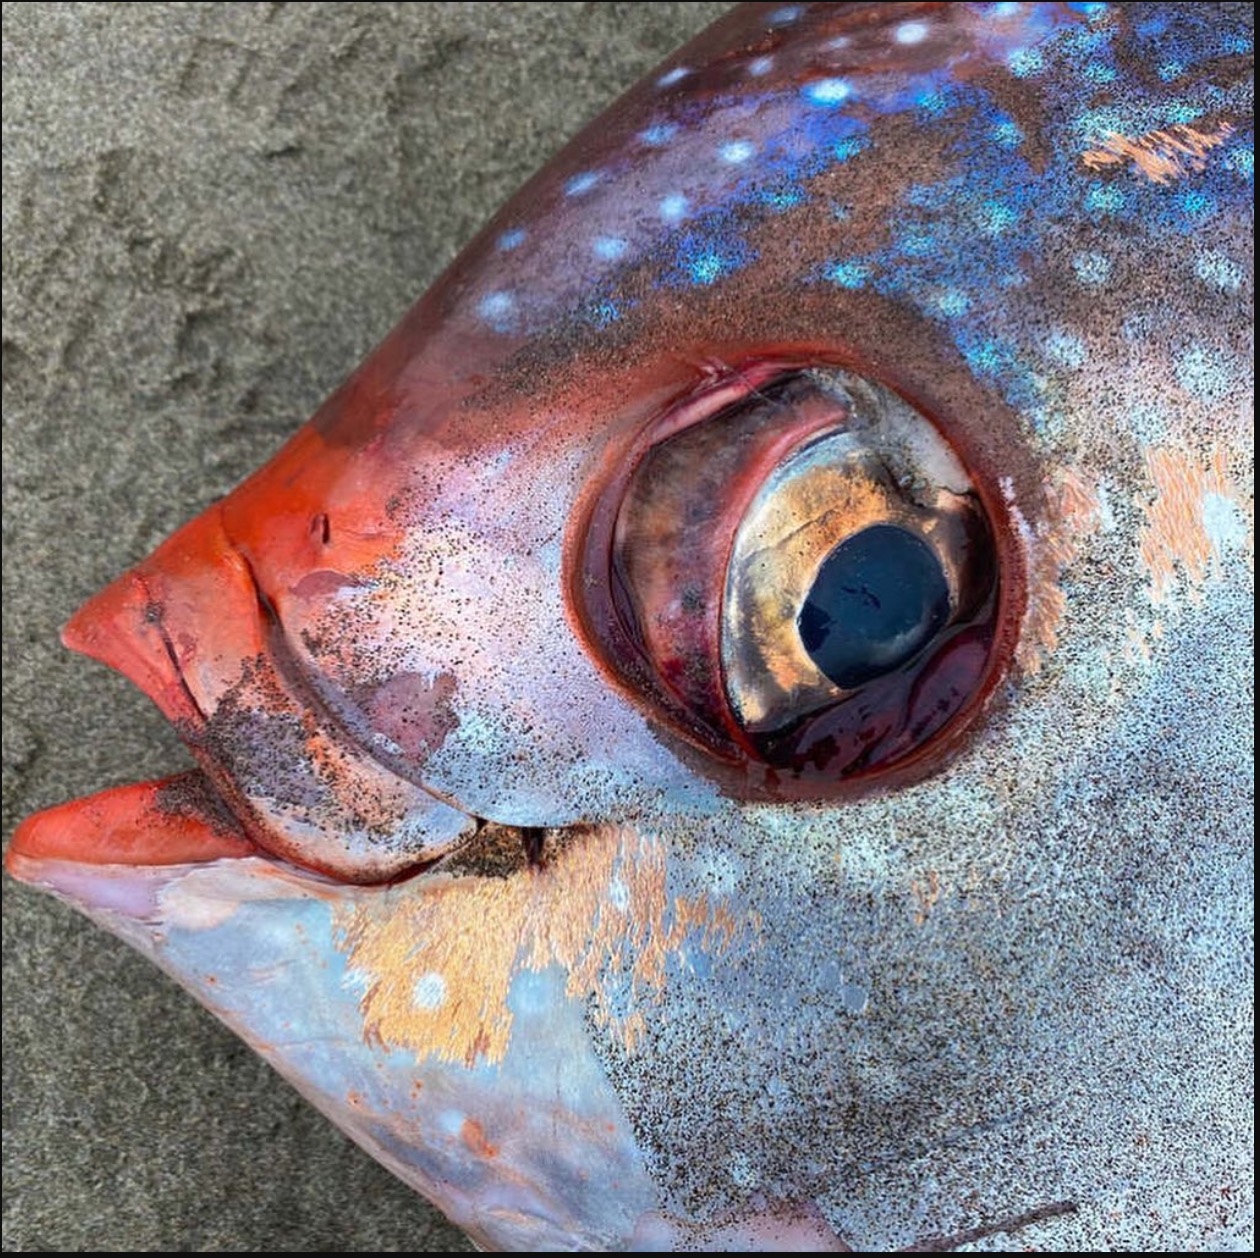 Ikan Gergasi Berwarna Oren Seberat 45kg Ditemui Terdampar Di Pantai